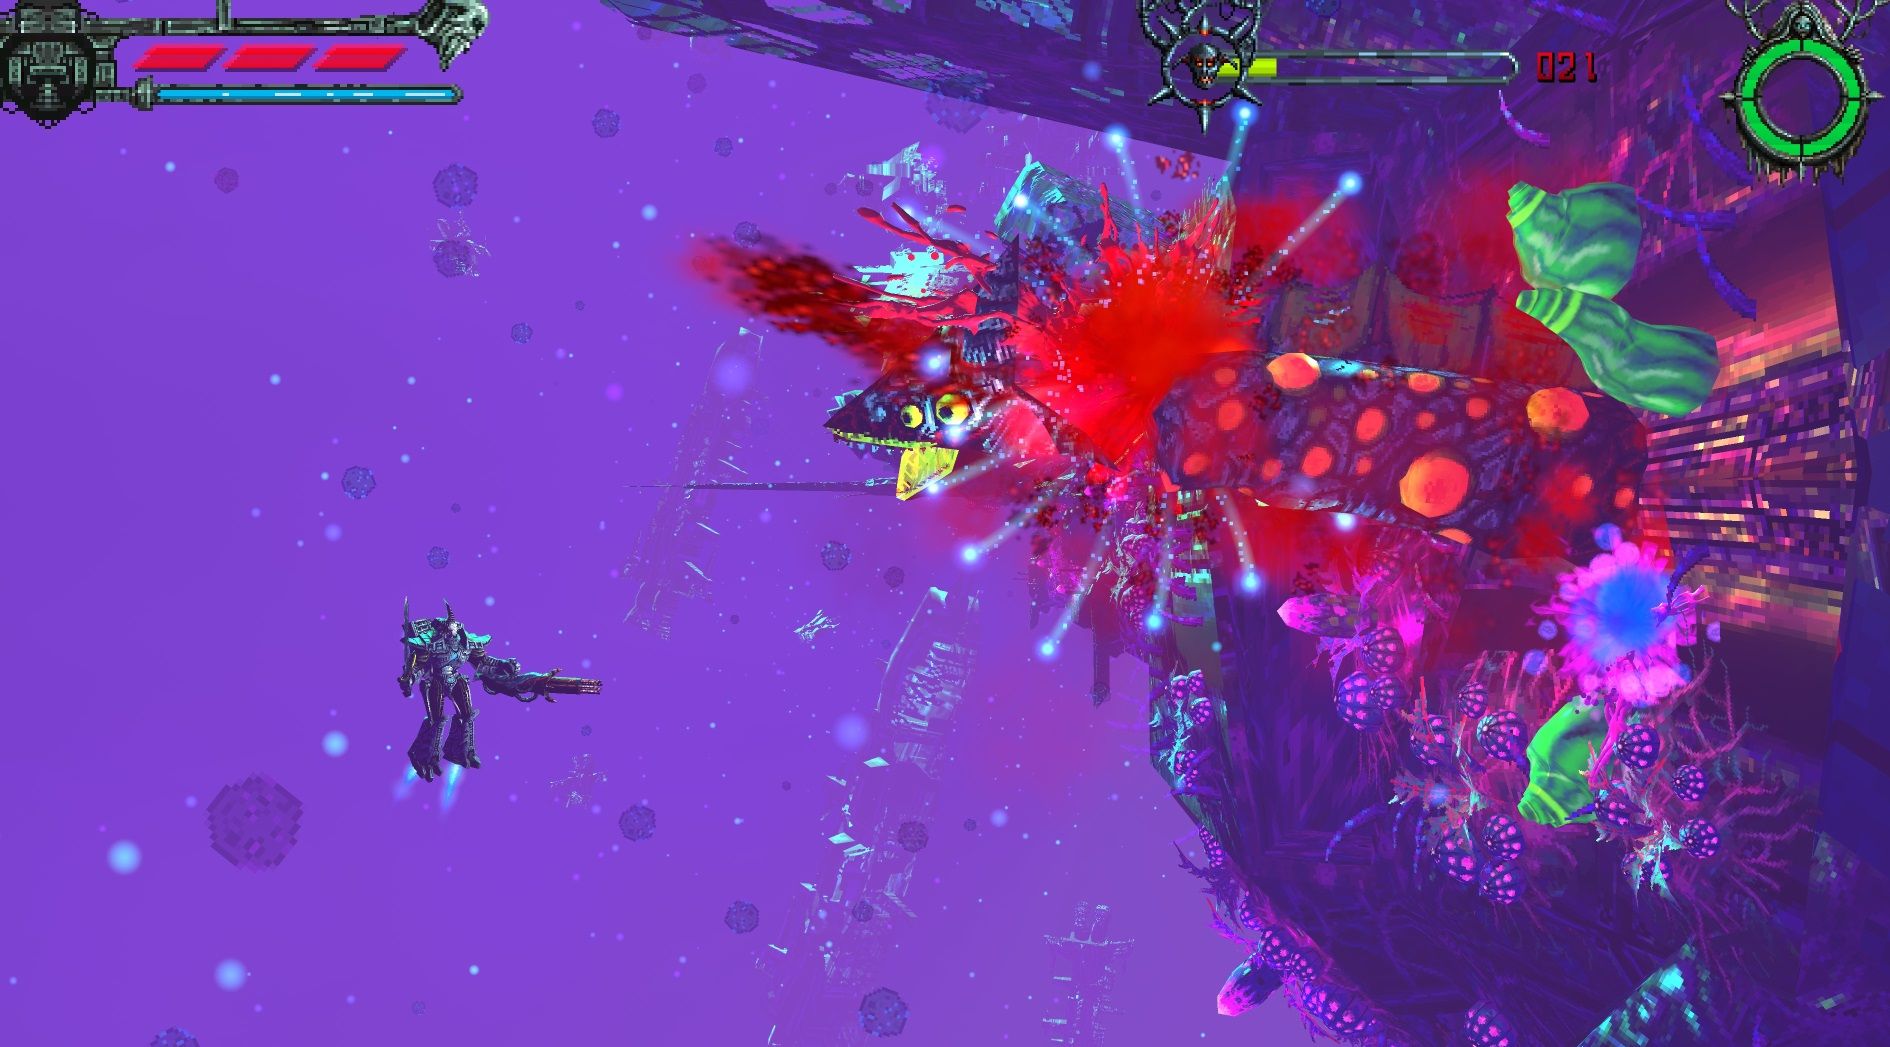 Un robot poisson dégoûtant explose dans une gerbe de sang